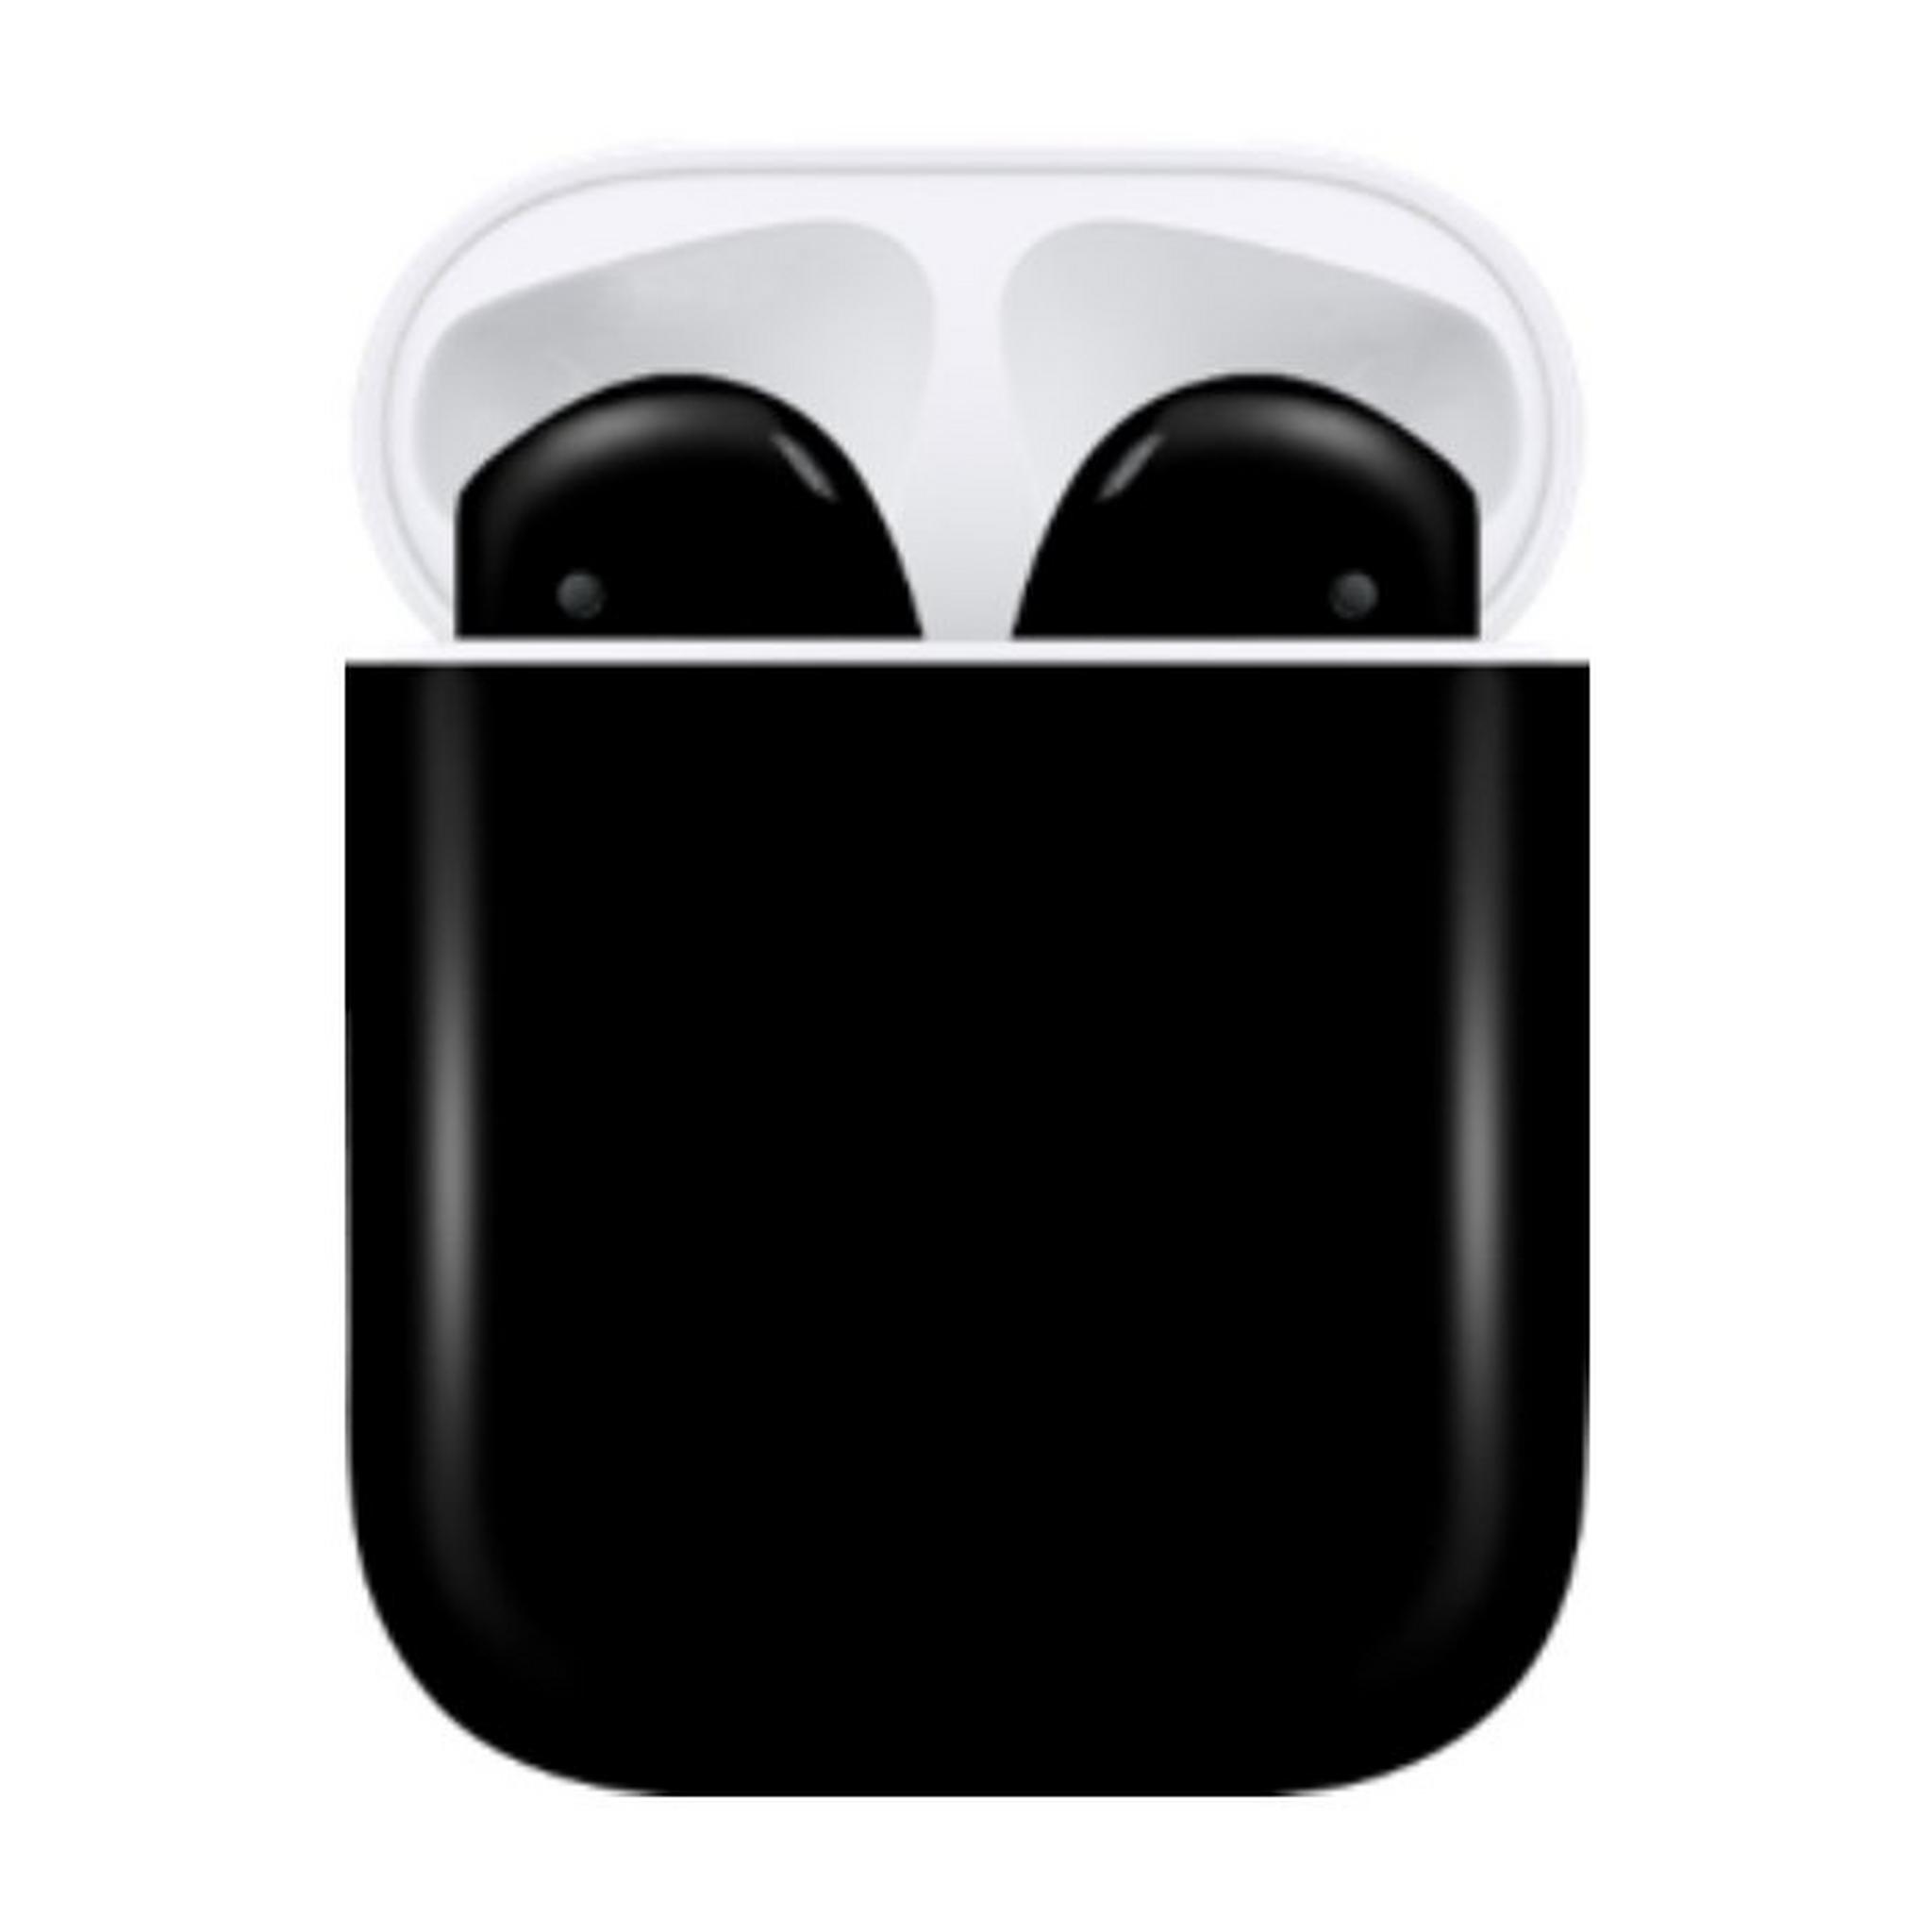 Switch Paint Apple Airpods 2 Wireless Earphones - Jet Matte Black